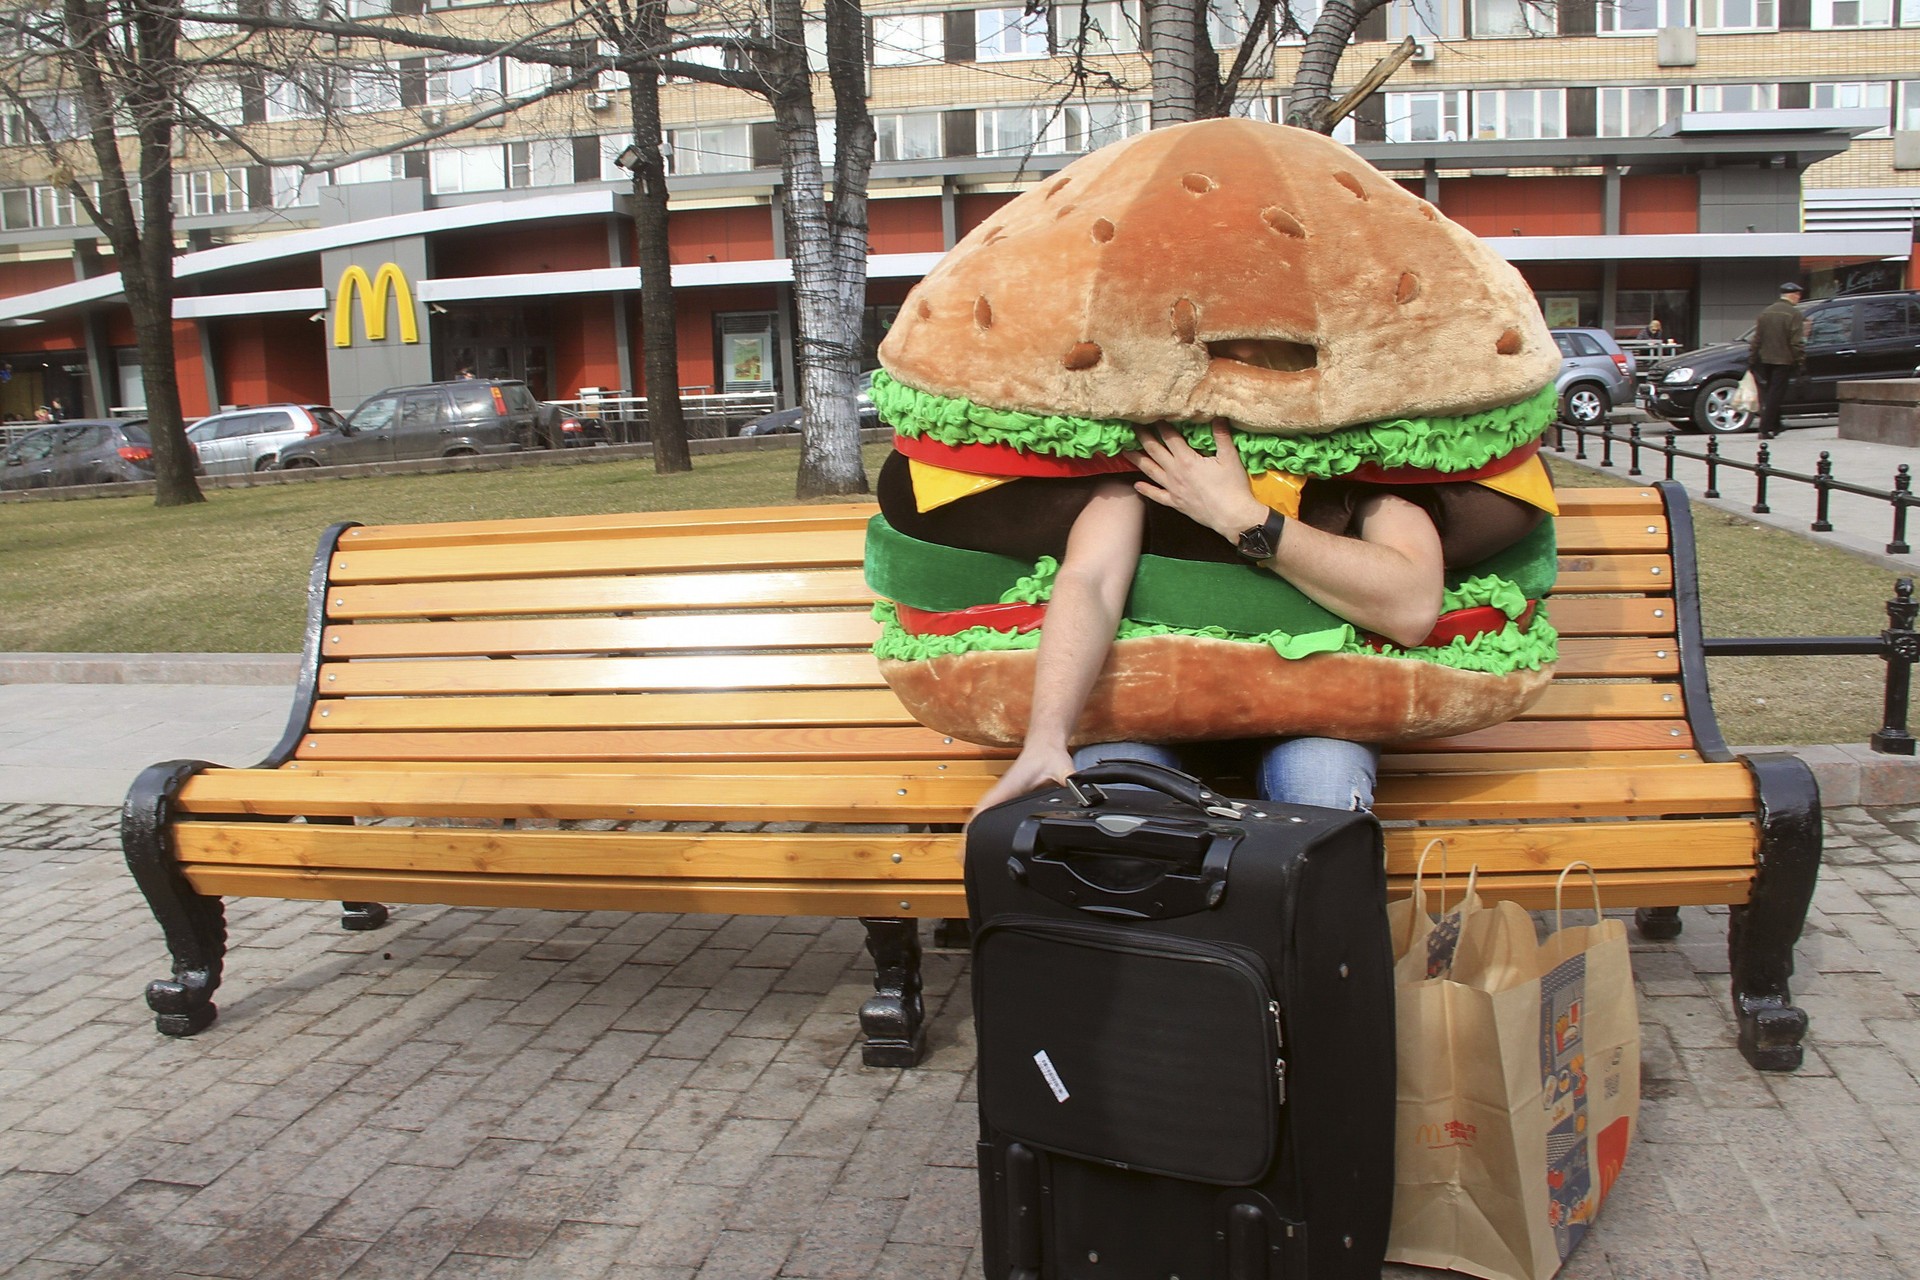 O hamburguer gigante que, após ter sido 'deportado', ficou entalado no metrô (Foto: Agência EFE)